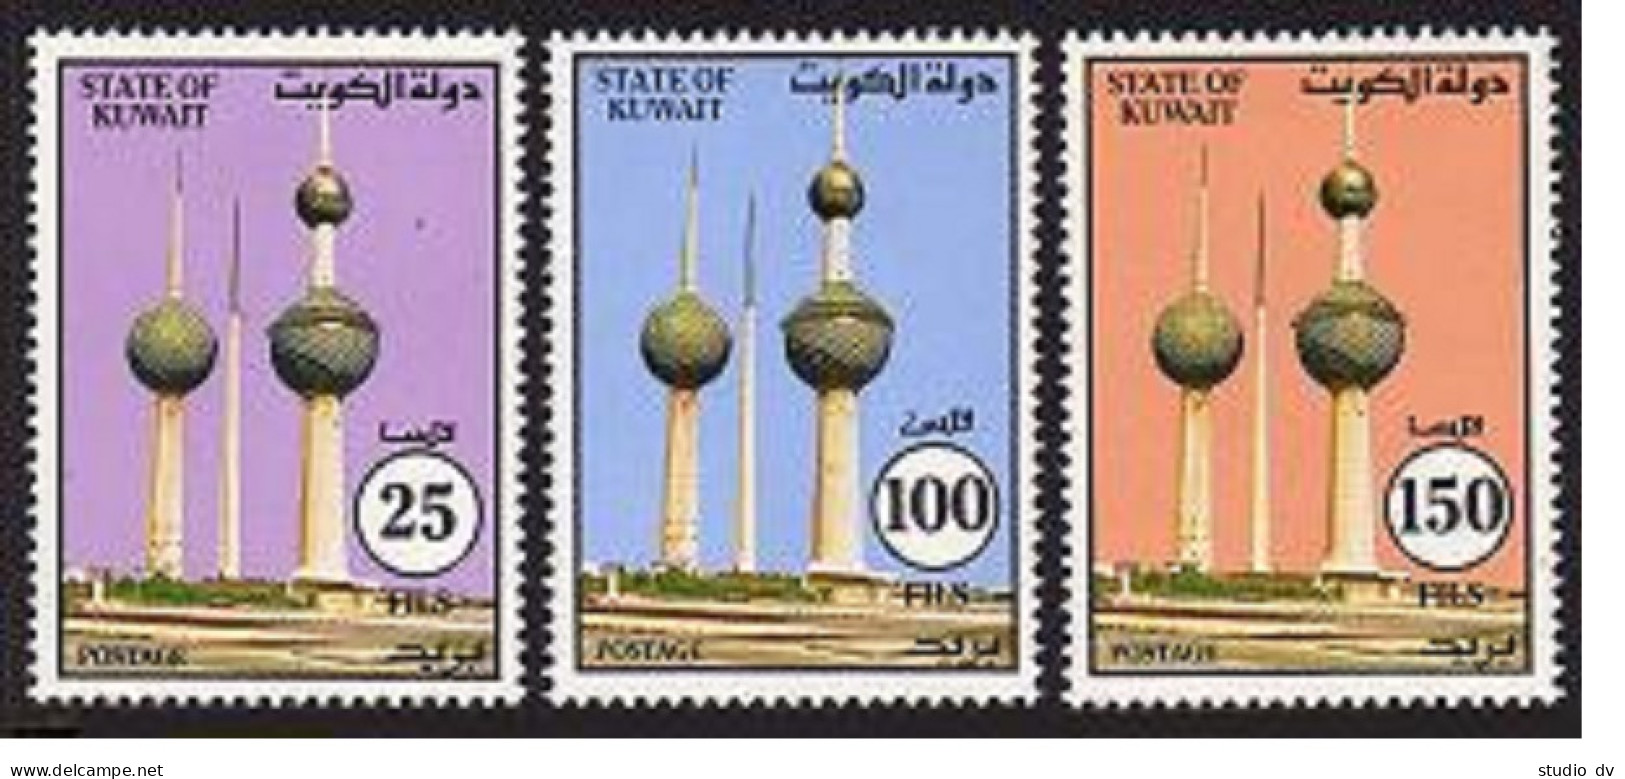 Kuwait 1205-1207, MNH. Michel 1337-1339. Kuwait Towers, 1993. - Koweït